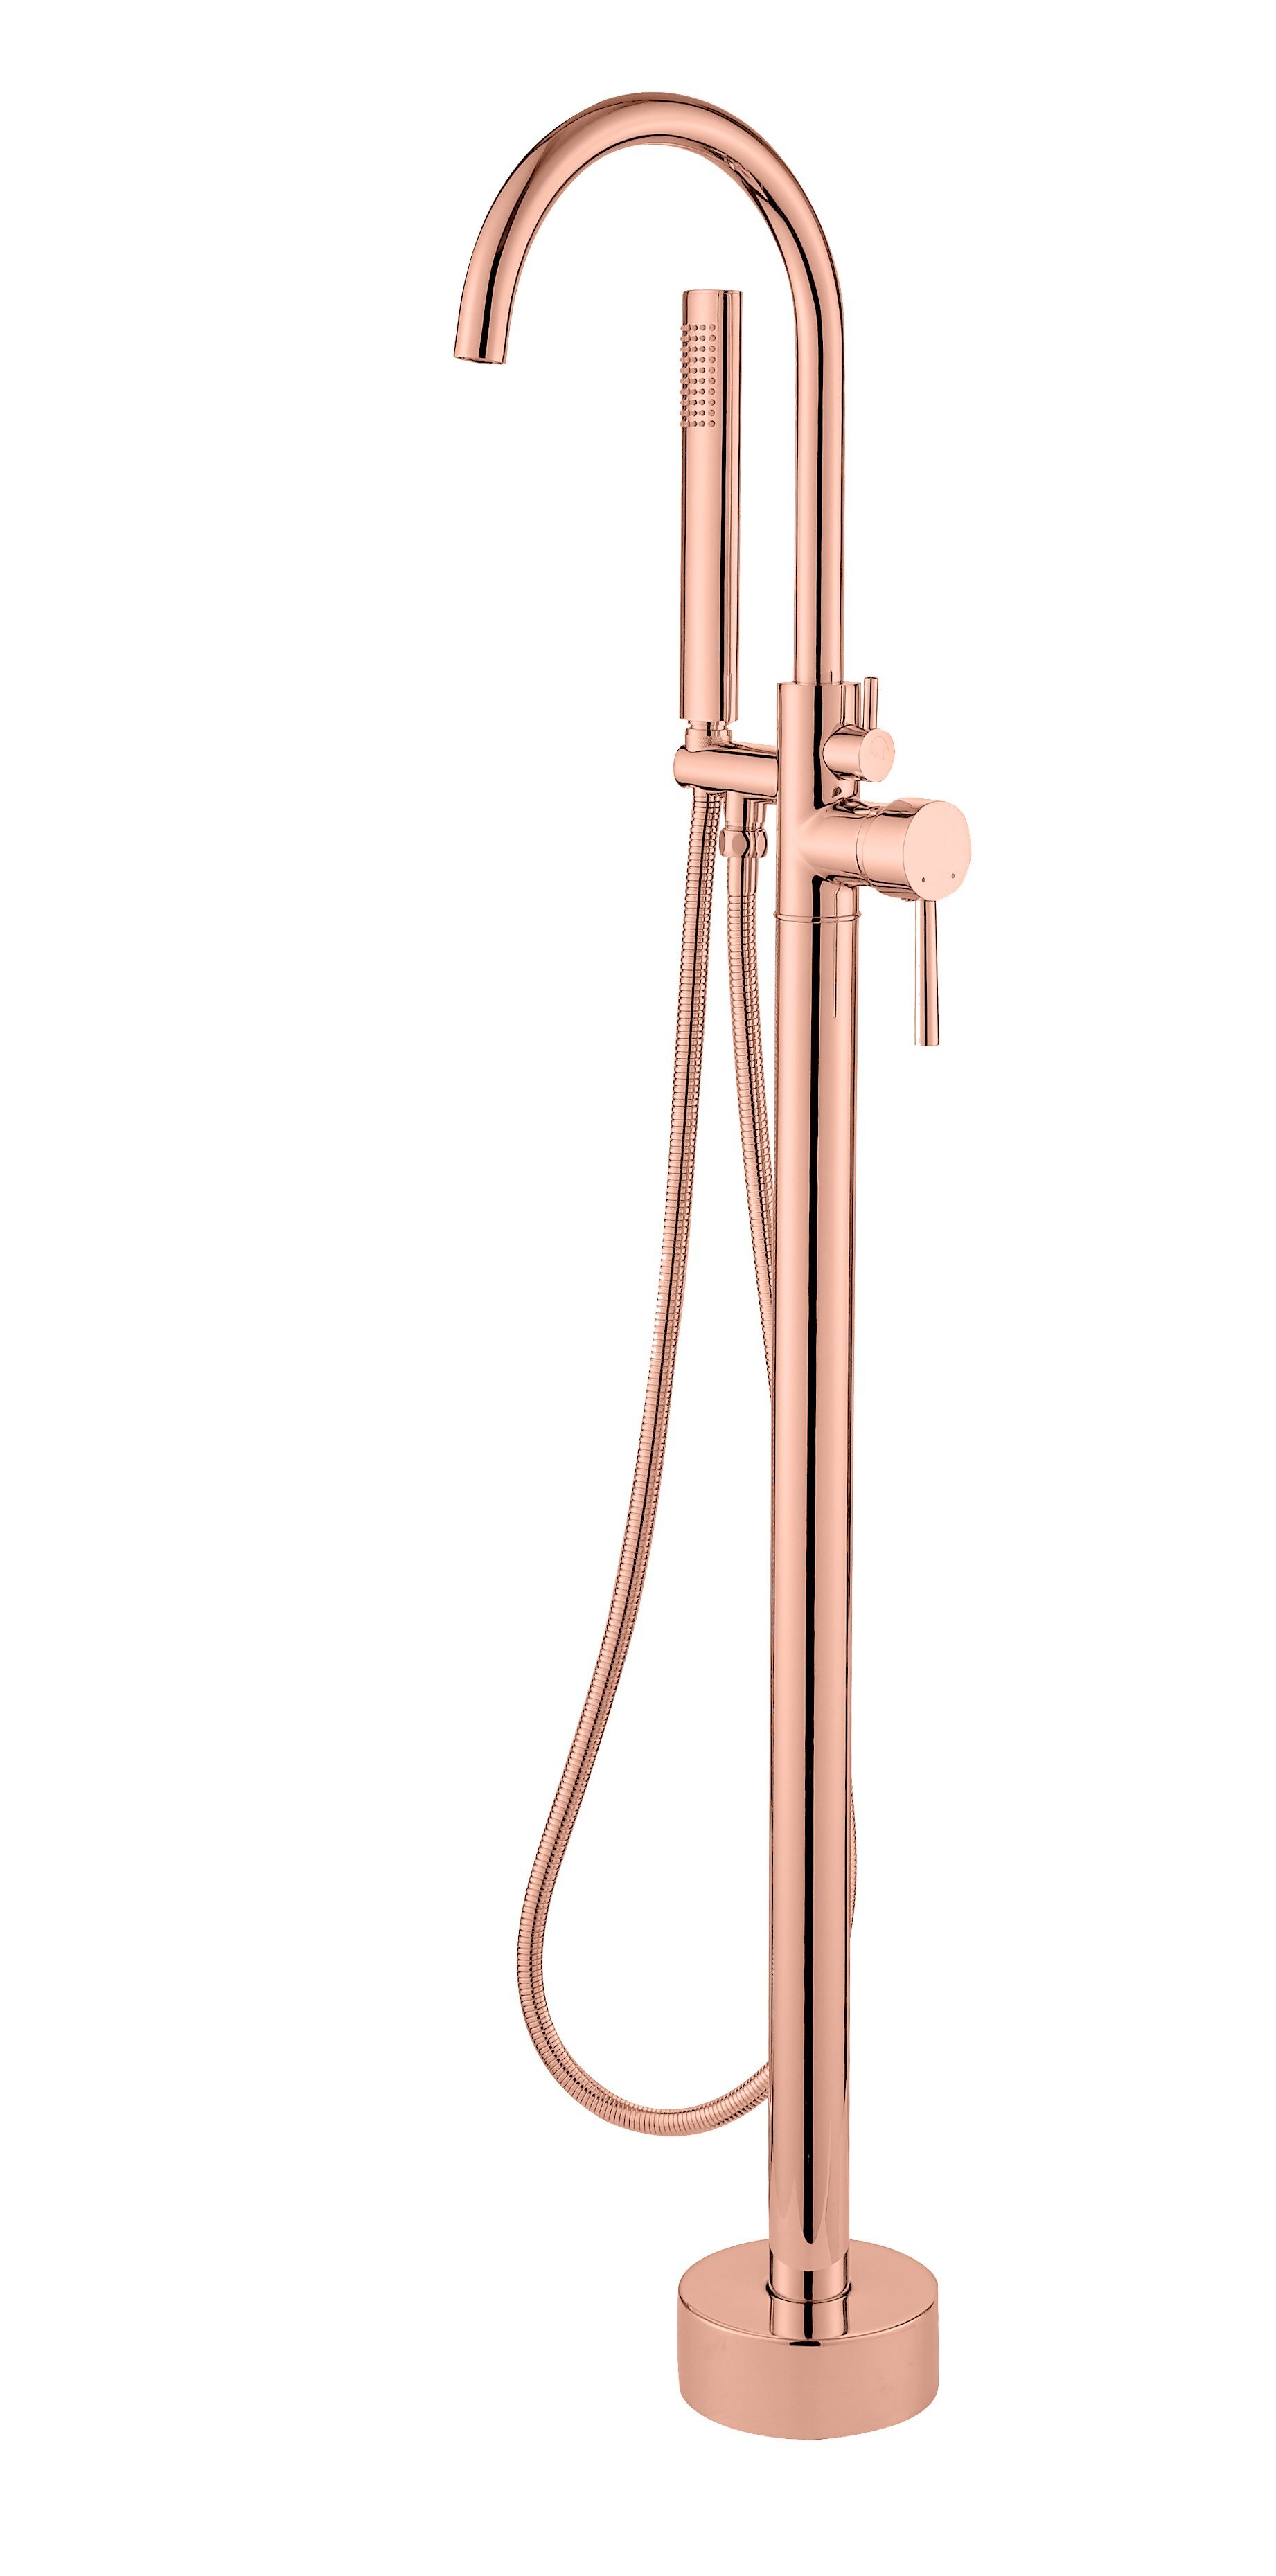 Best Design Lyon vrijstaande badkraan 120 cm rosé mat goud